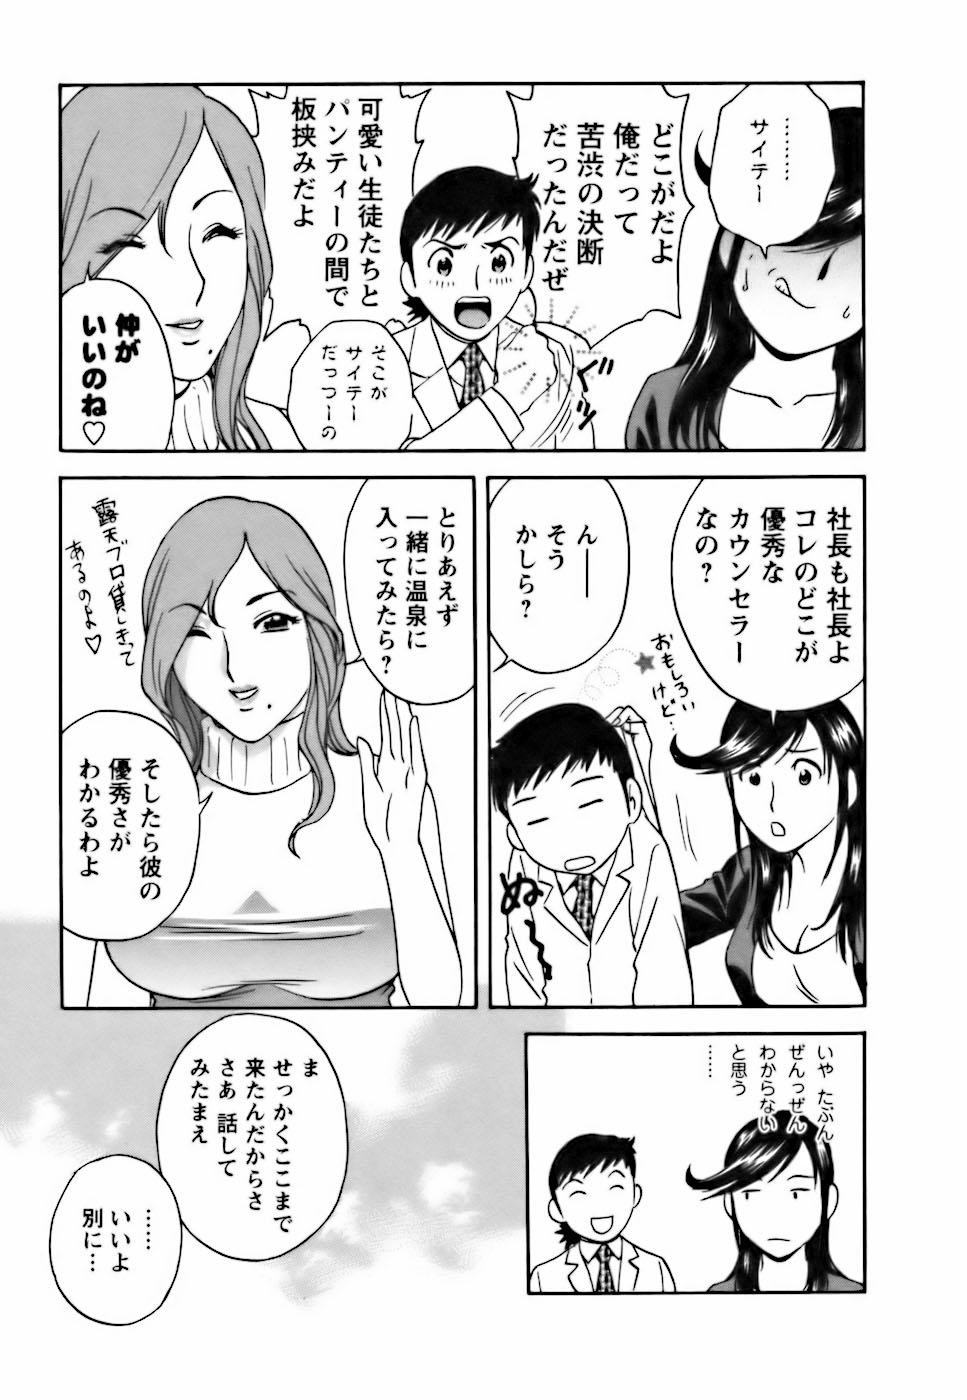 [Hidemaru] Mo-Retsu! Boin Sensei (Boing Boing Teacher) Vol.3 134